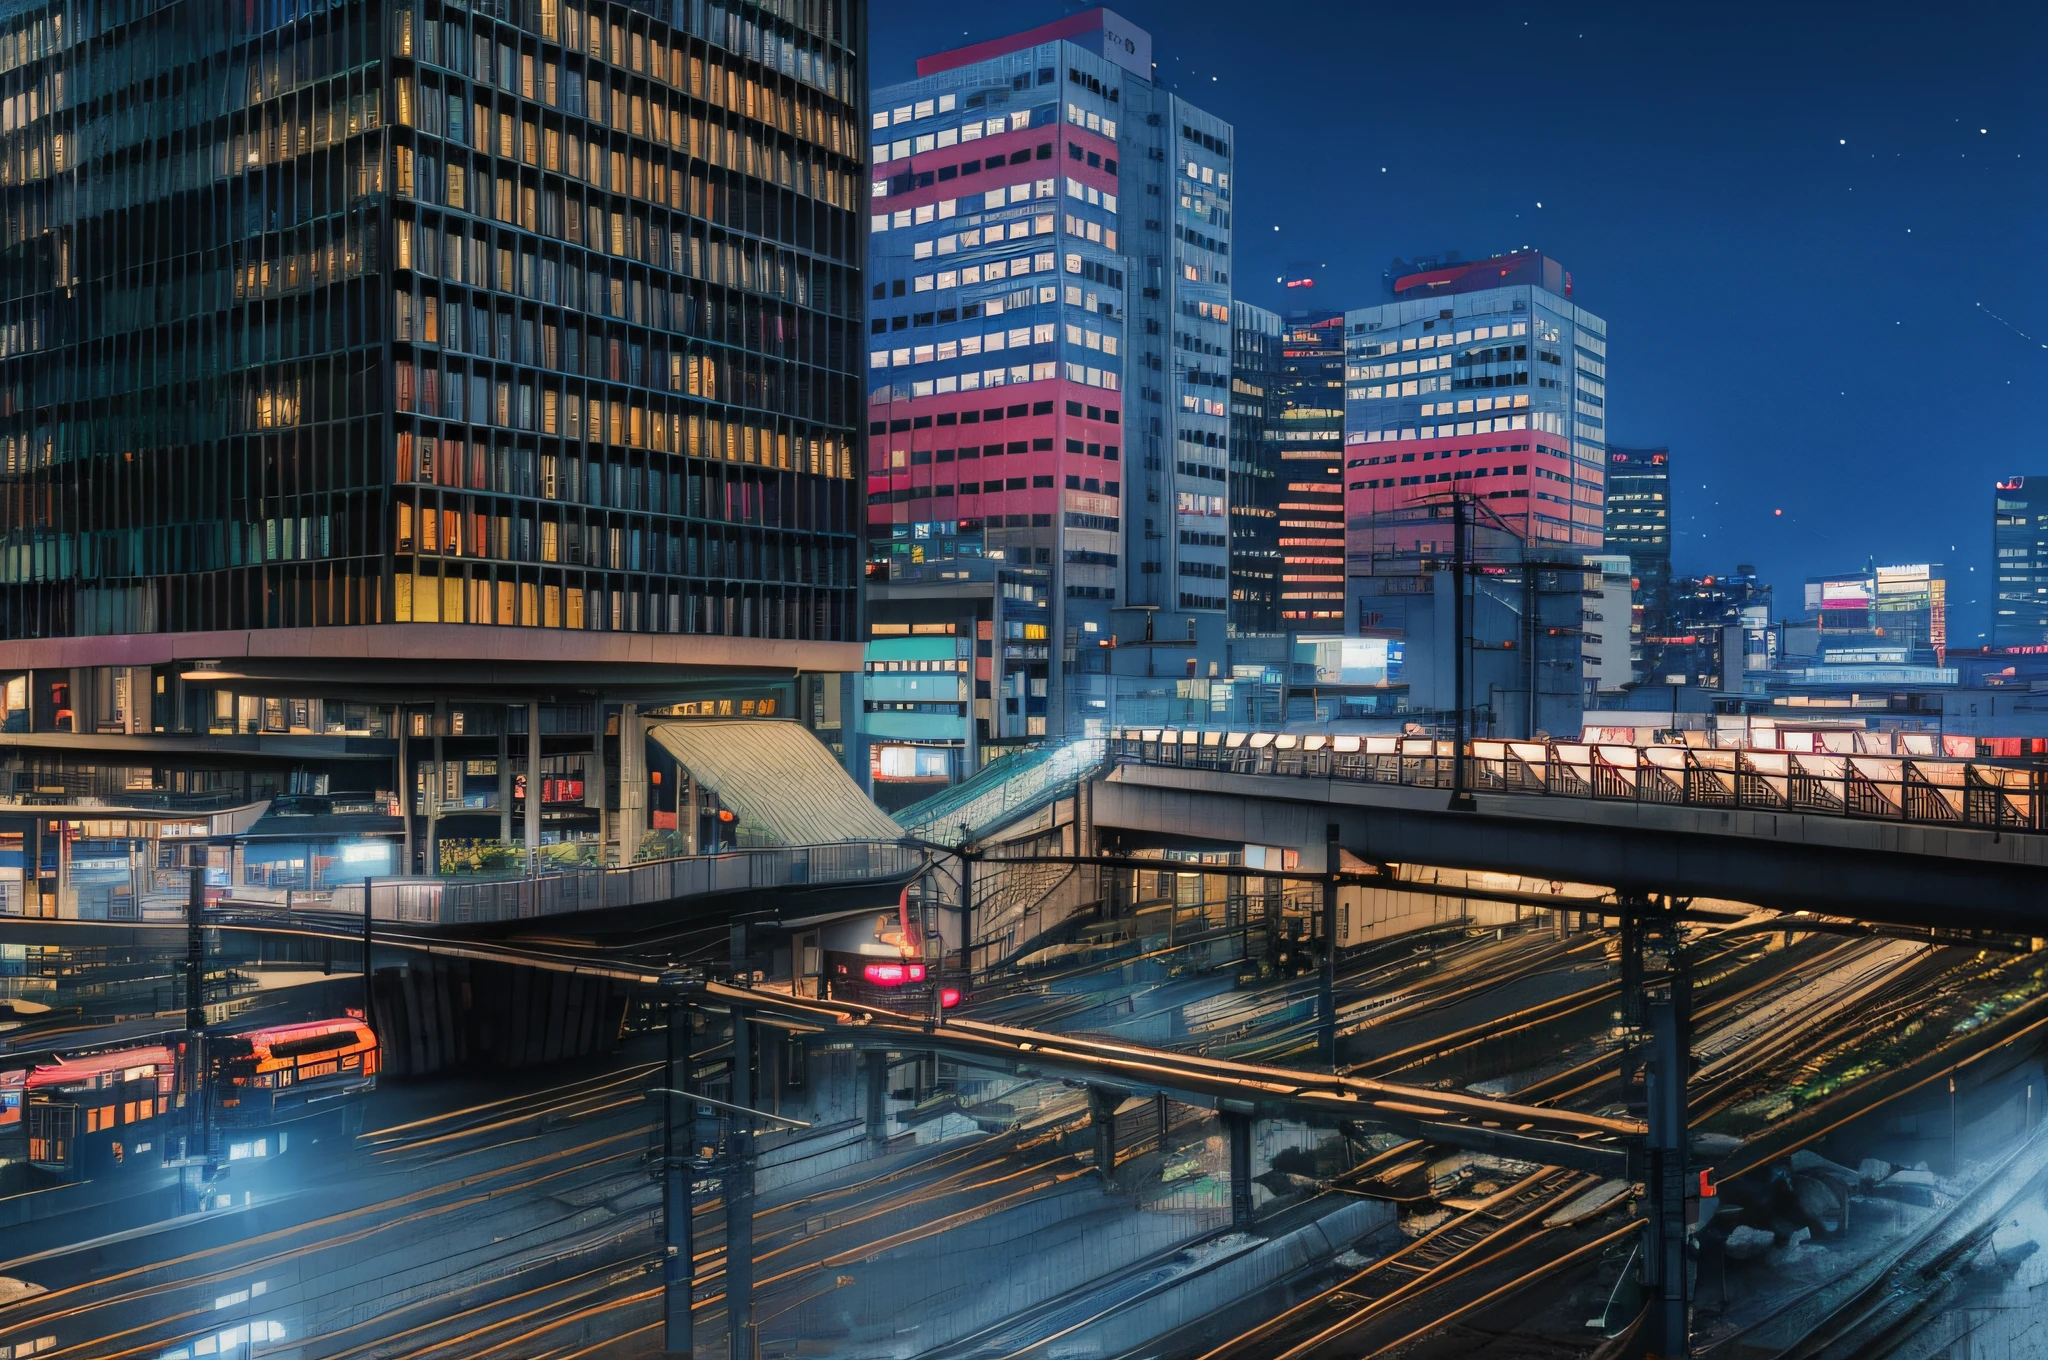 Vista noturna de uma estação de trem com uma ponte e um trem, Noite Tóquio metrópole, cidade japonesa à noite, in Tóquio à noite, centro japonês, Tóquio à noite, Tóquio futurista e limpa, paisagem urbana movimentada, tal, cercando a cidade, Tóquio moderna, estação de monotrilho, no futuro telhado noturno de Tóquio, Tóquio - cidade estilo, em Neotóquio